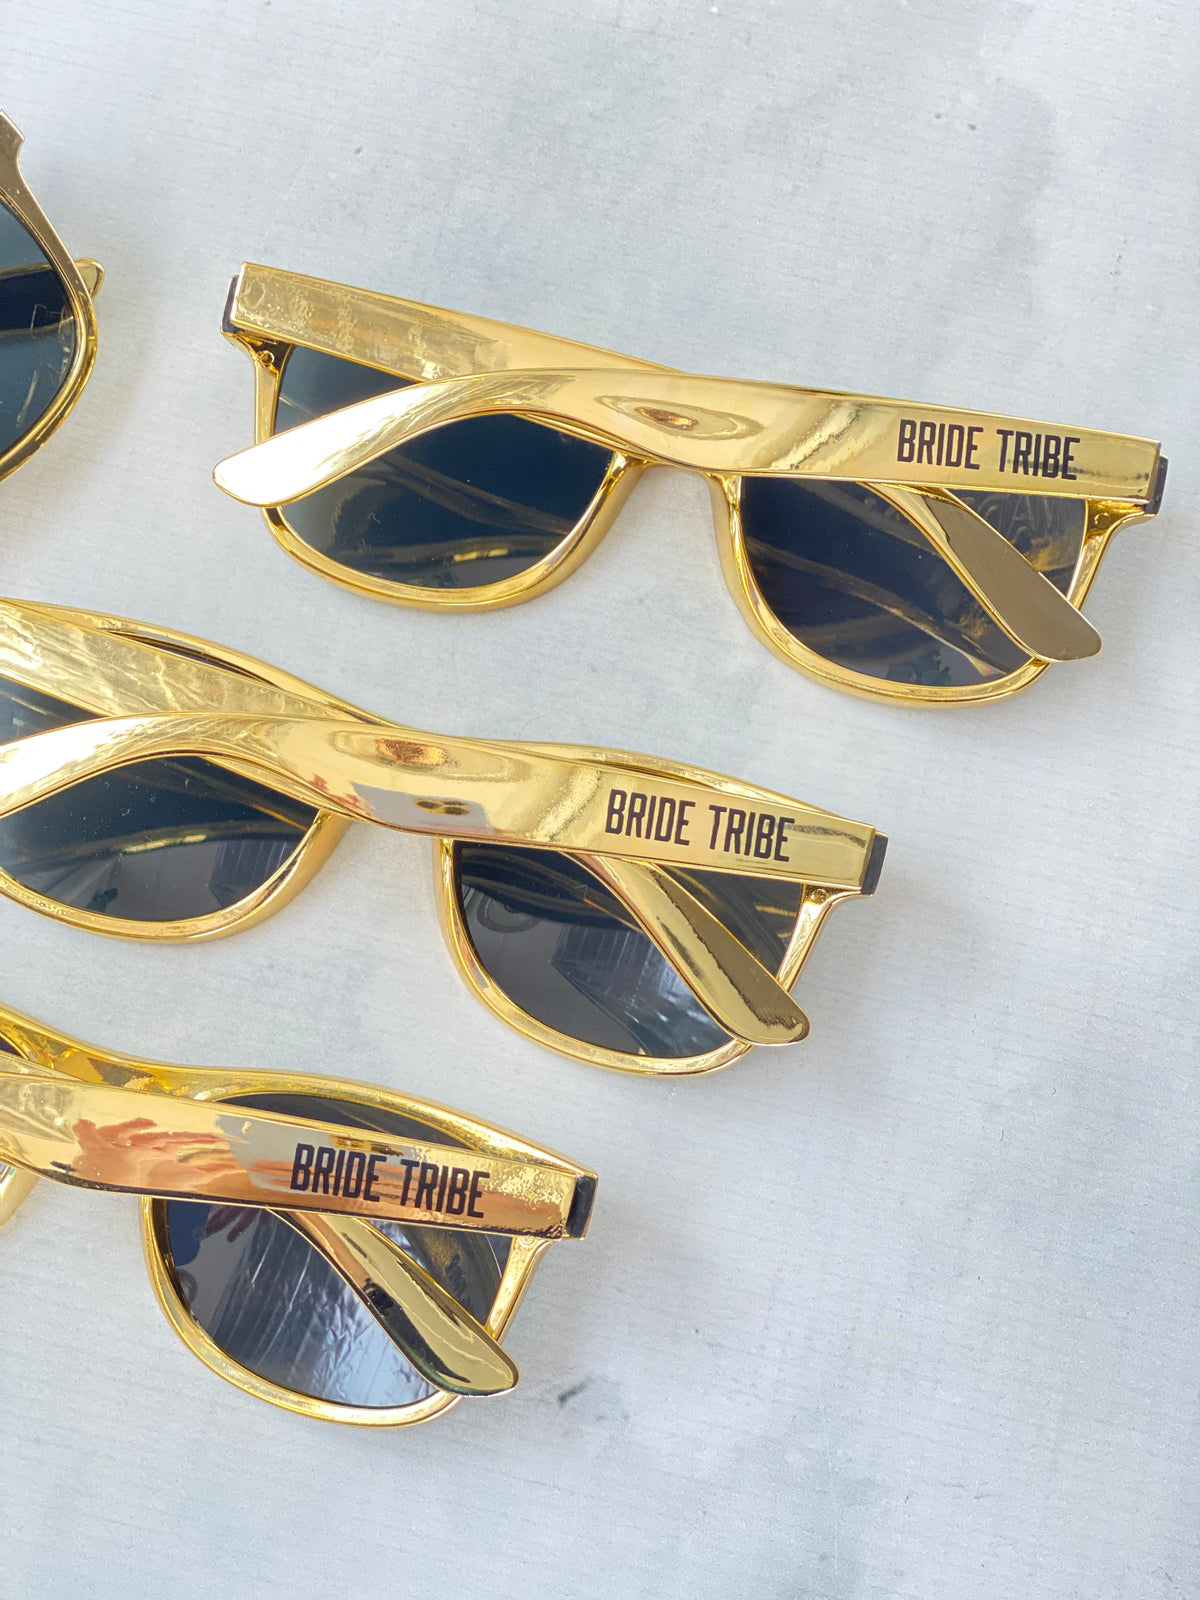 Gold Bride Tribe Sunglasses